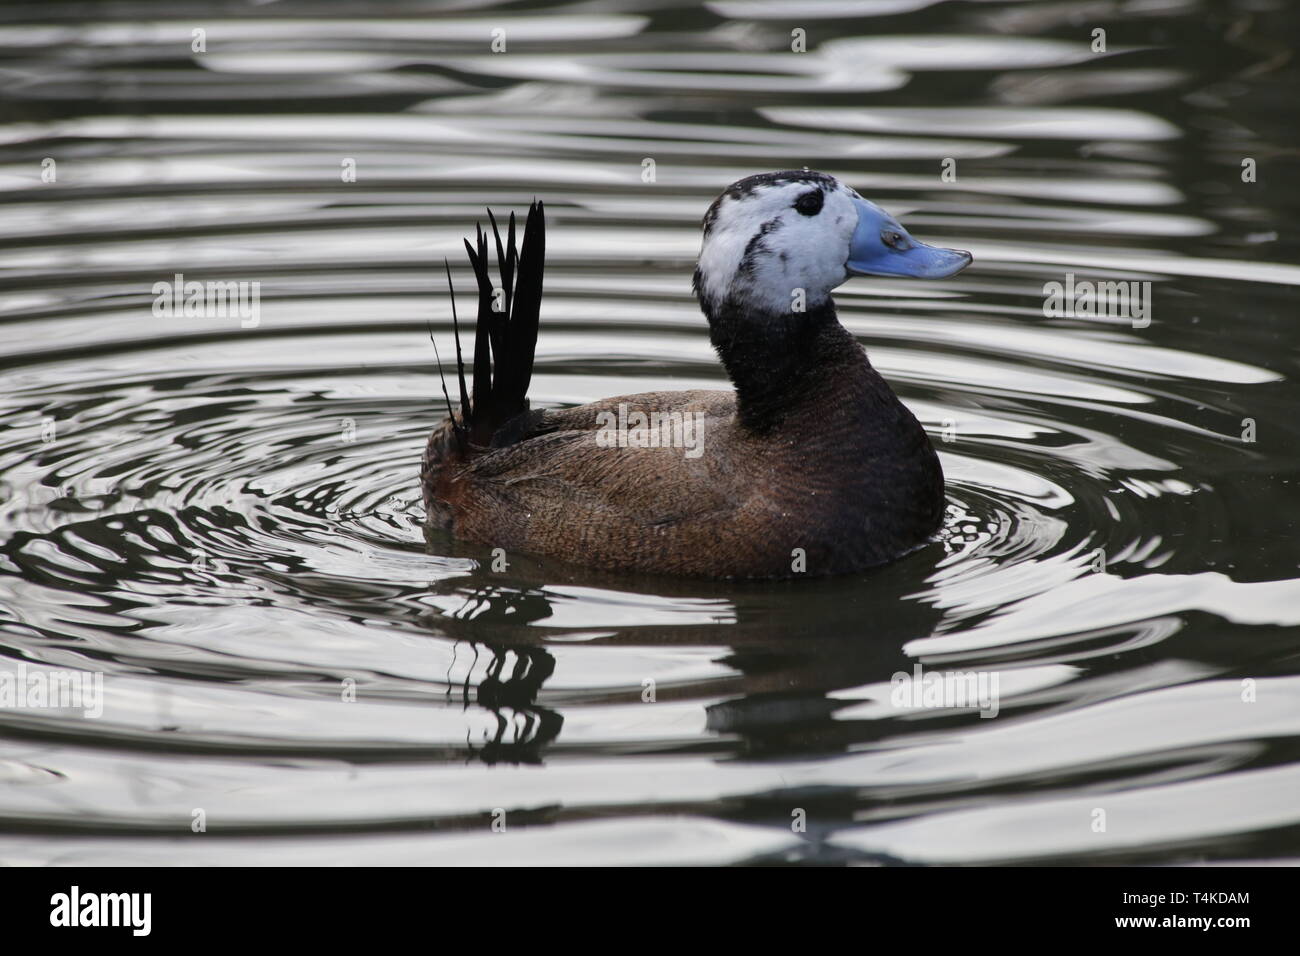 Blue-billed duck Schwimmen im Teich, WWT London Wetland Trust, GB. Stockfoto